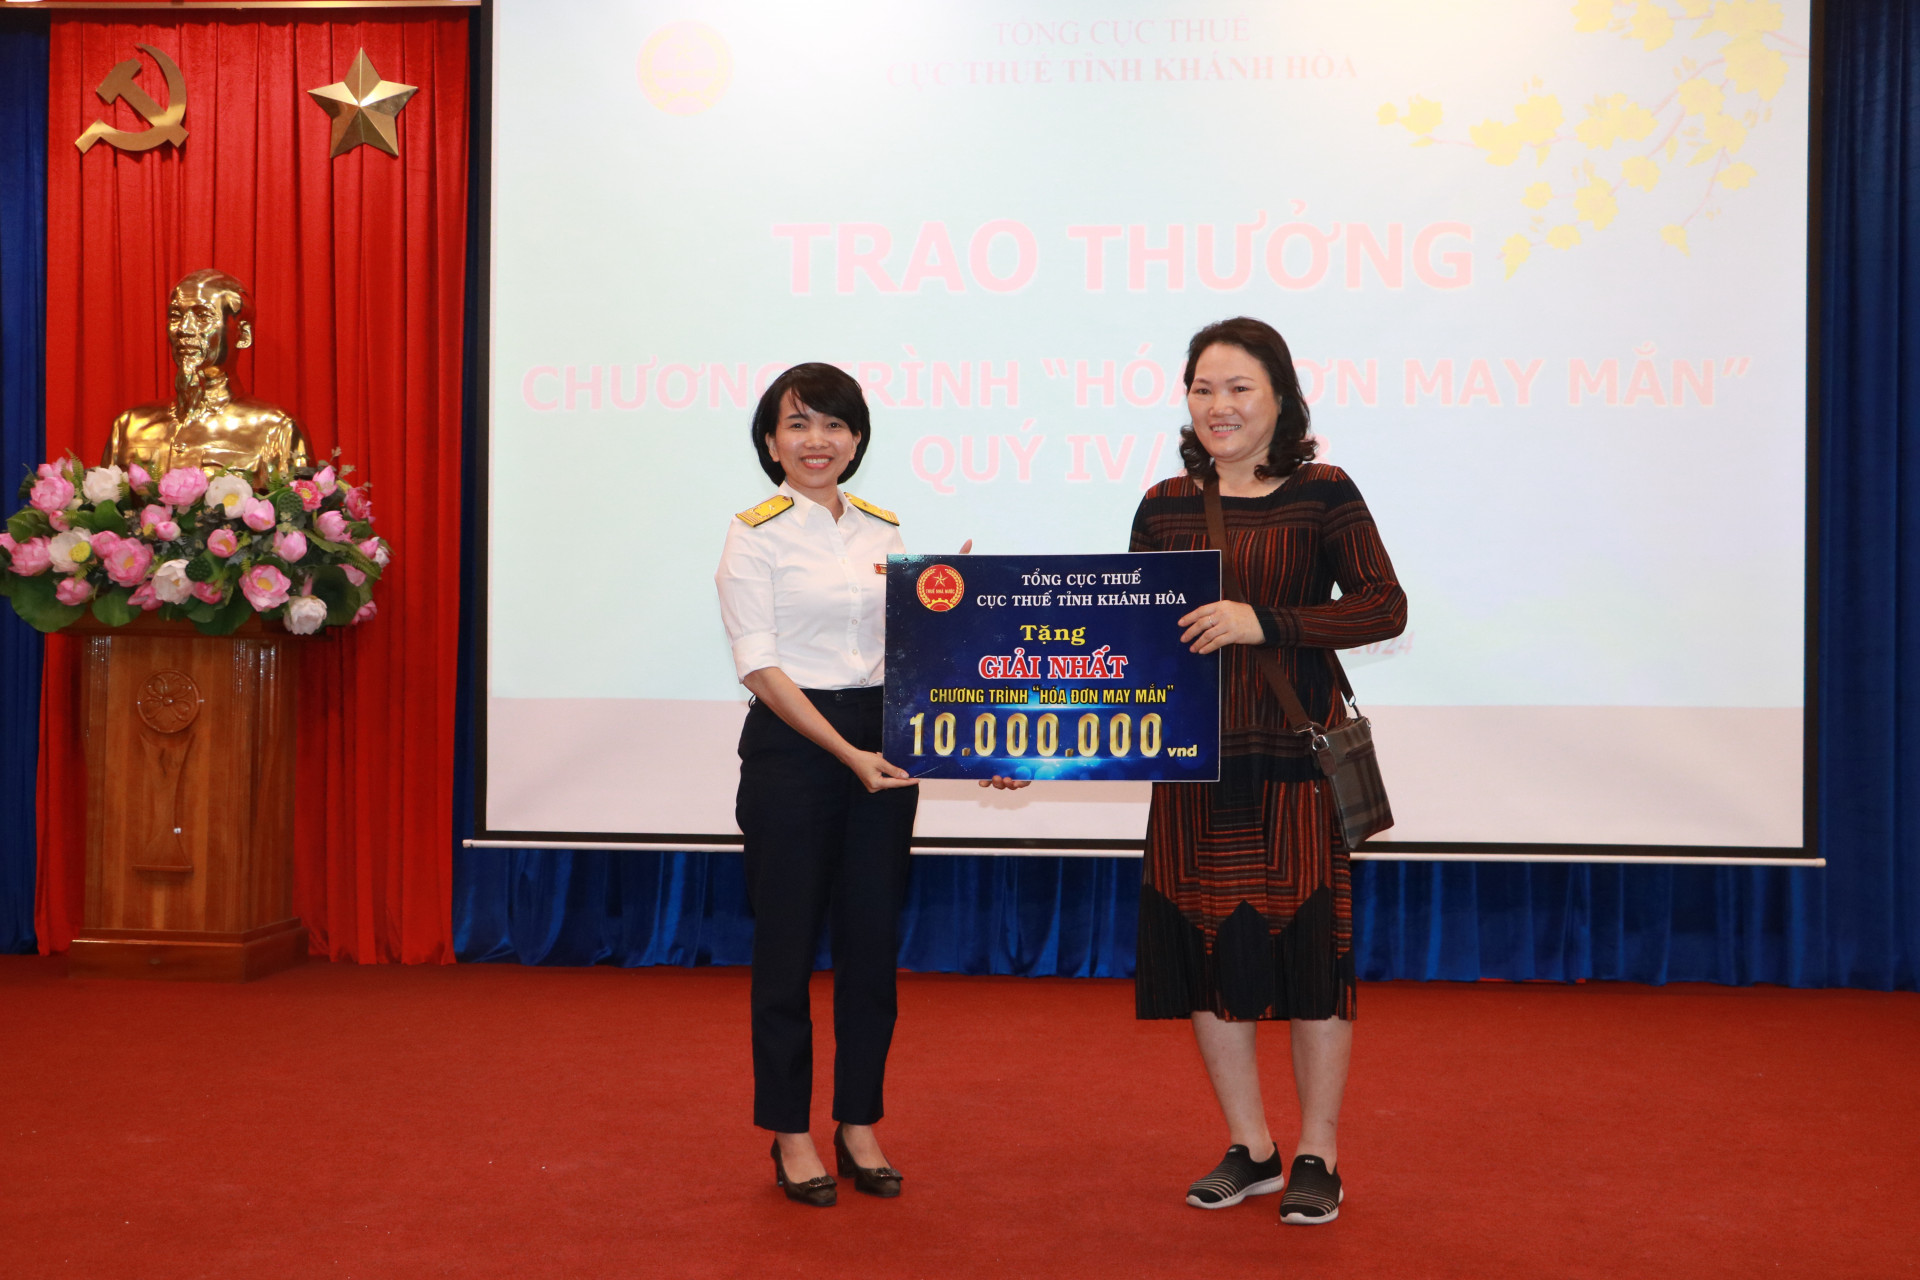 Bà Nguyễn Kim Thái Linh - Phó Cục trưởng Cục Thuế tỉnh trao giải Nhất cho đai diện hộ kinh doanh 